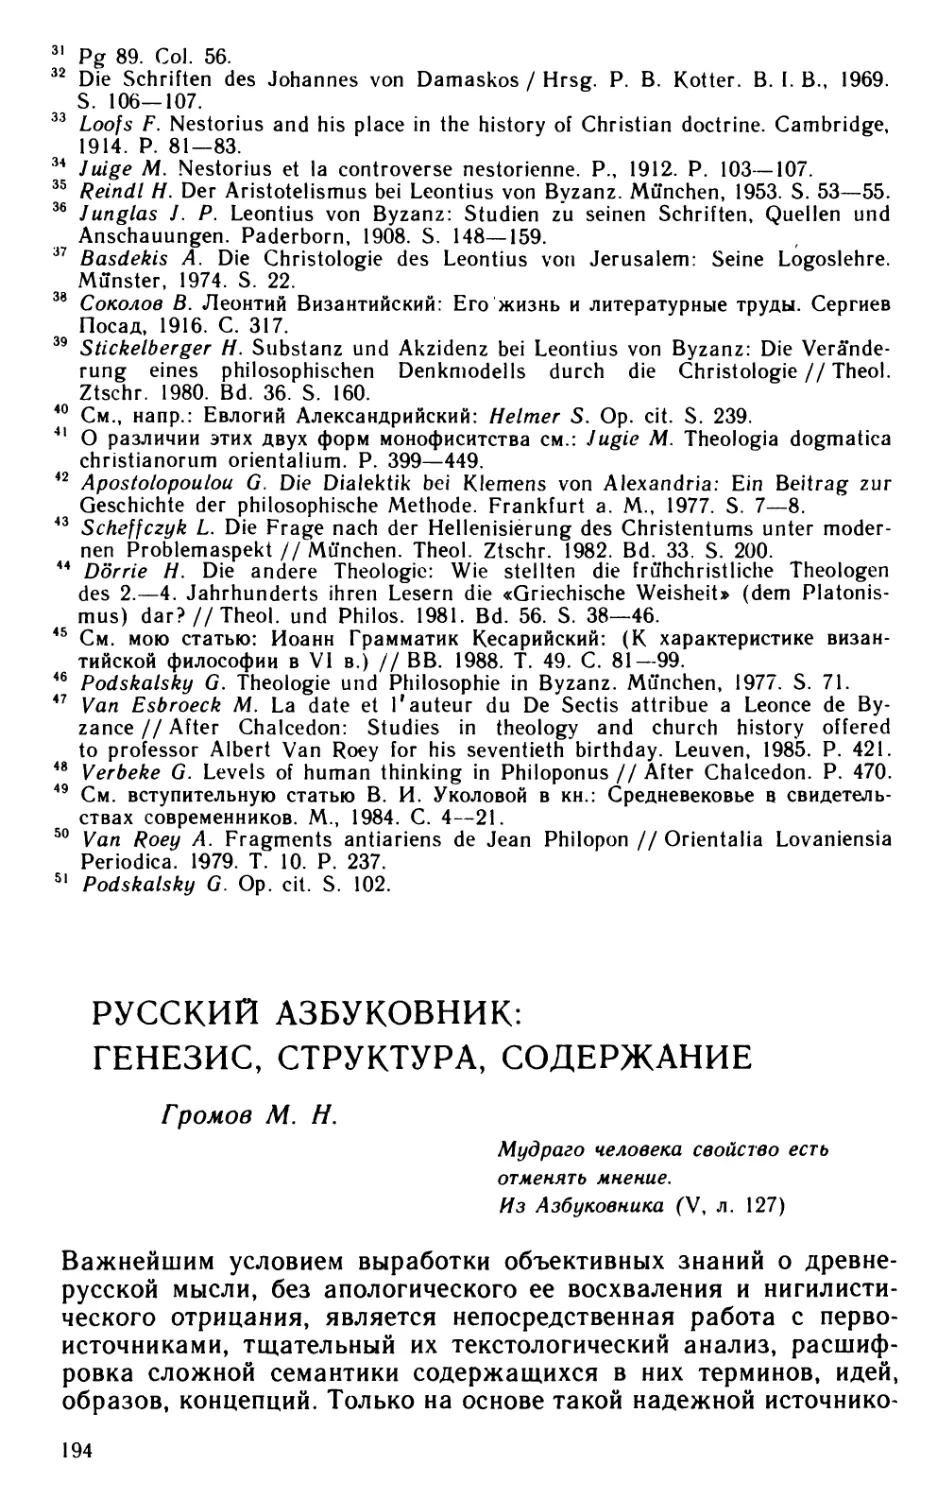 Громов M.H. Русский Азбуковник: генезис, структура, содержание